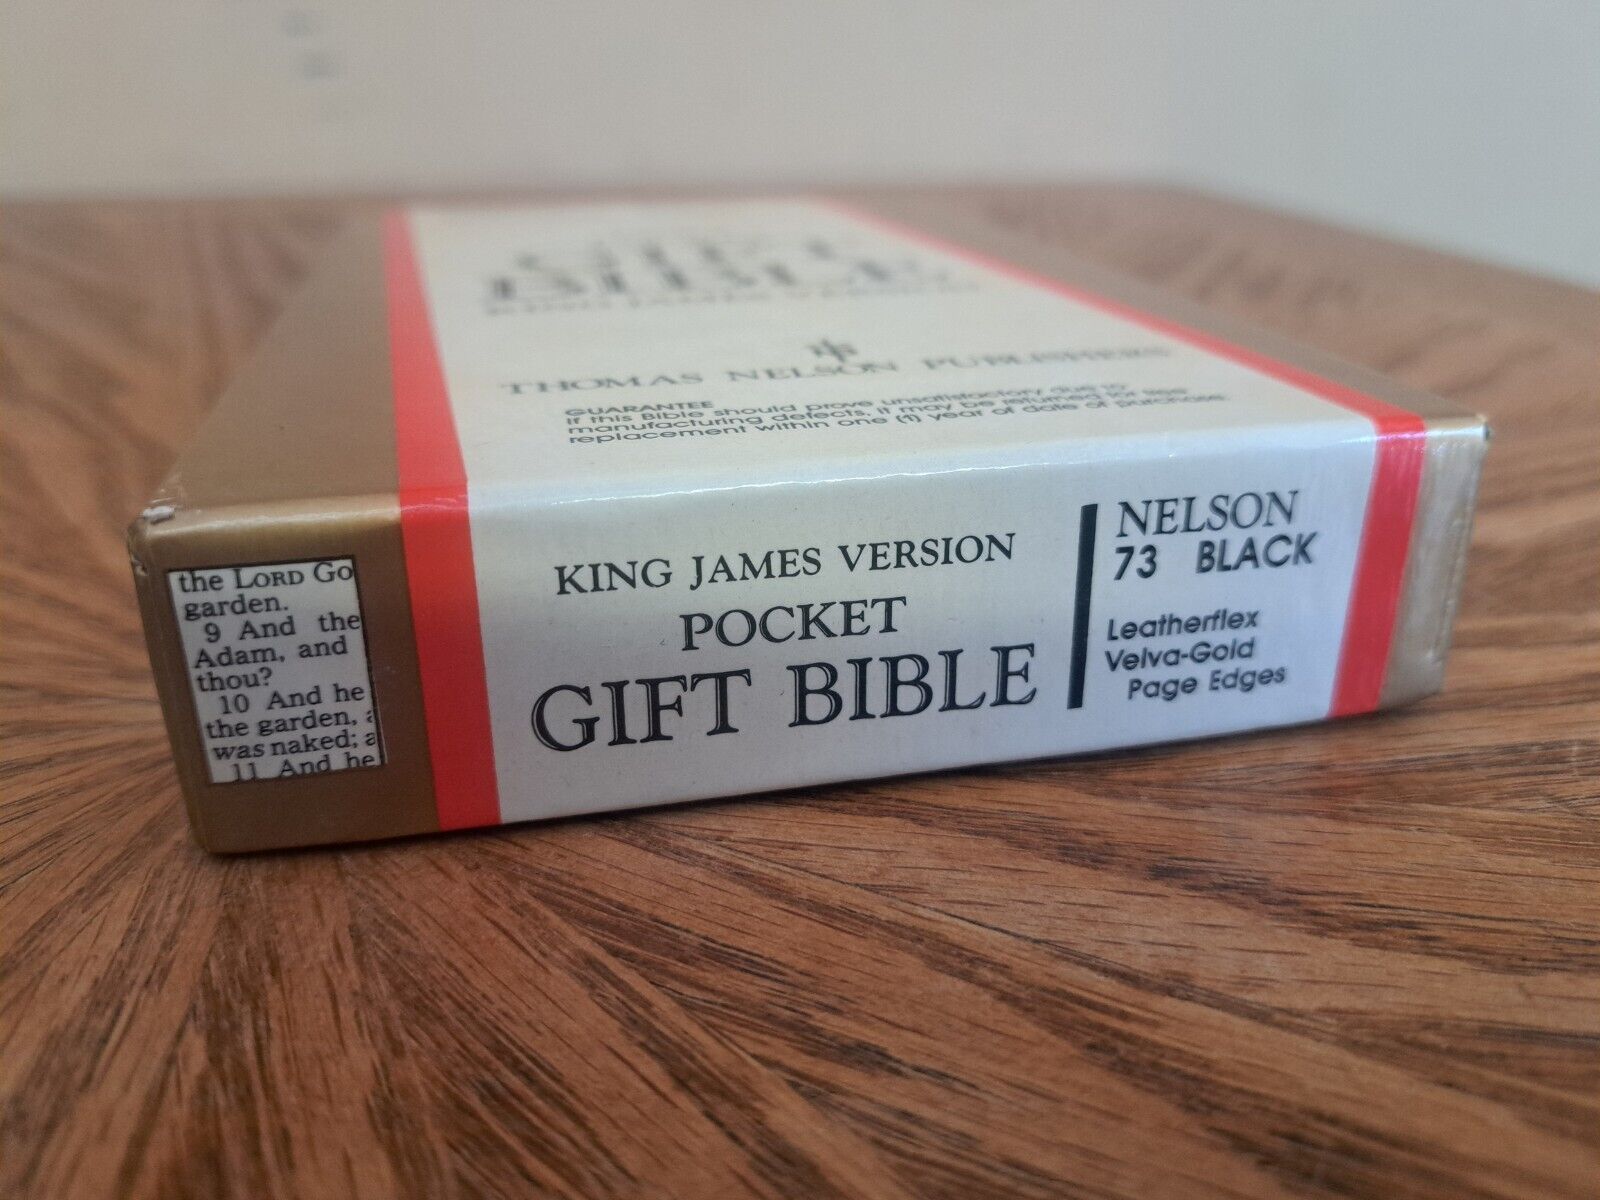 NEW OLD STOCK Nelson KJV Pocket Gift Bible #73 1970's